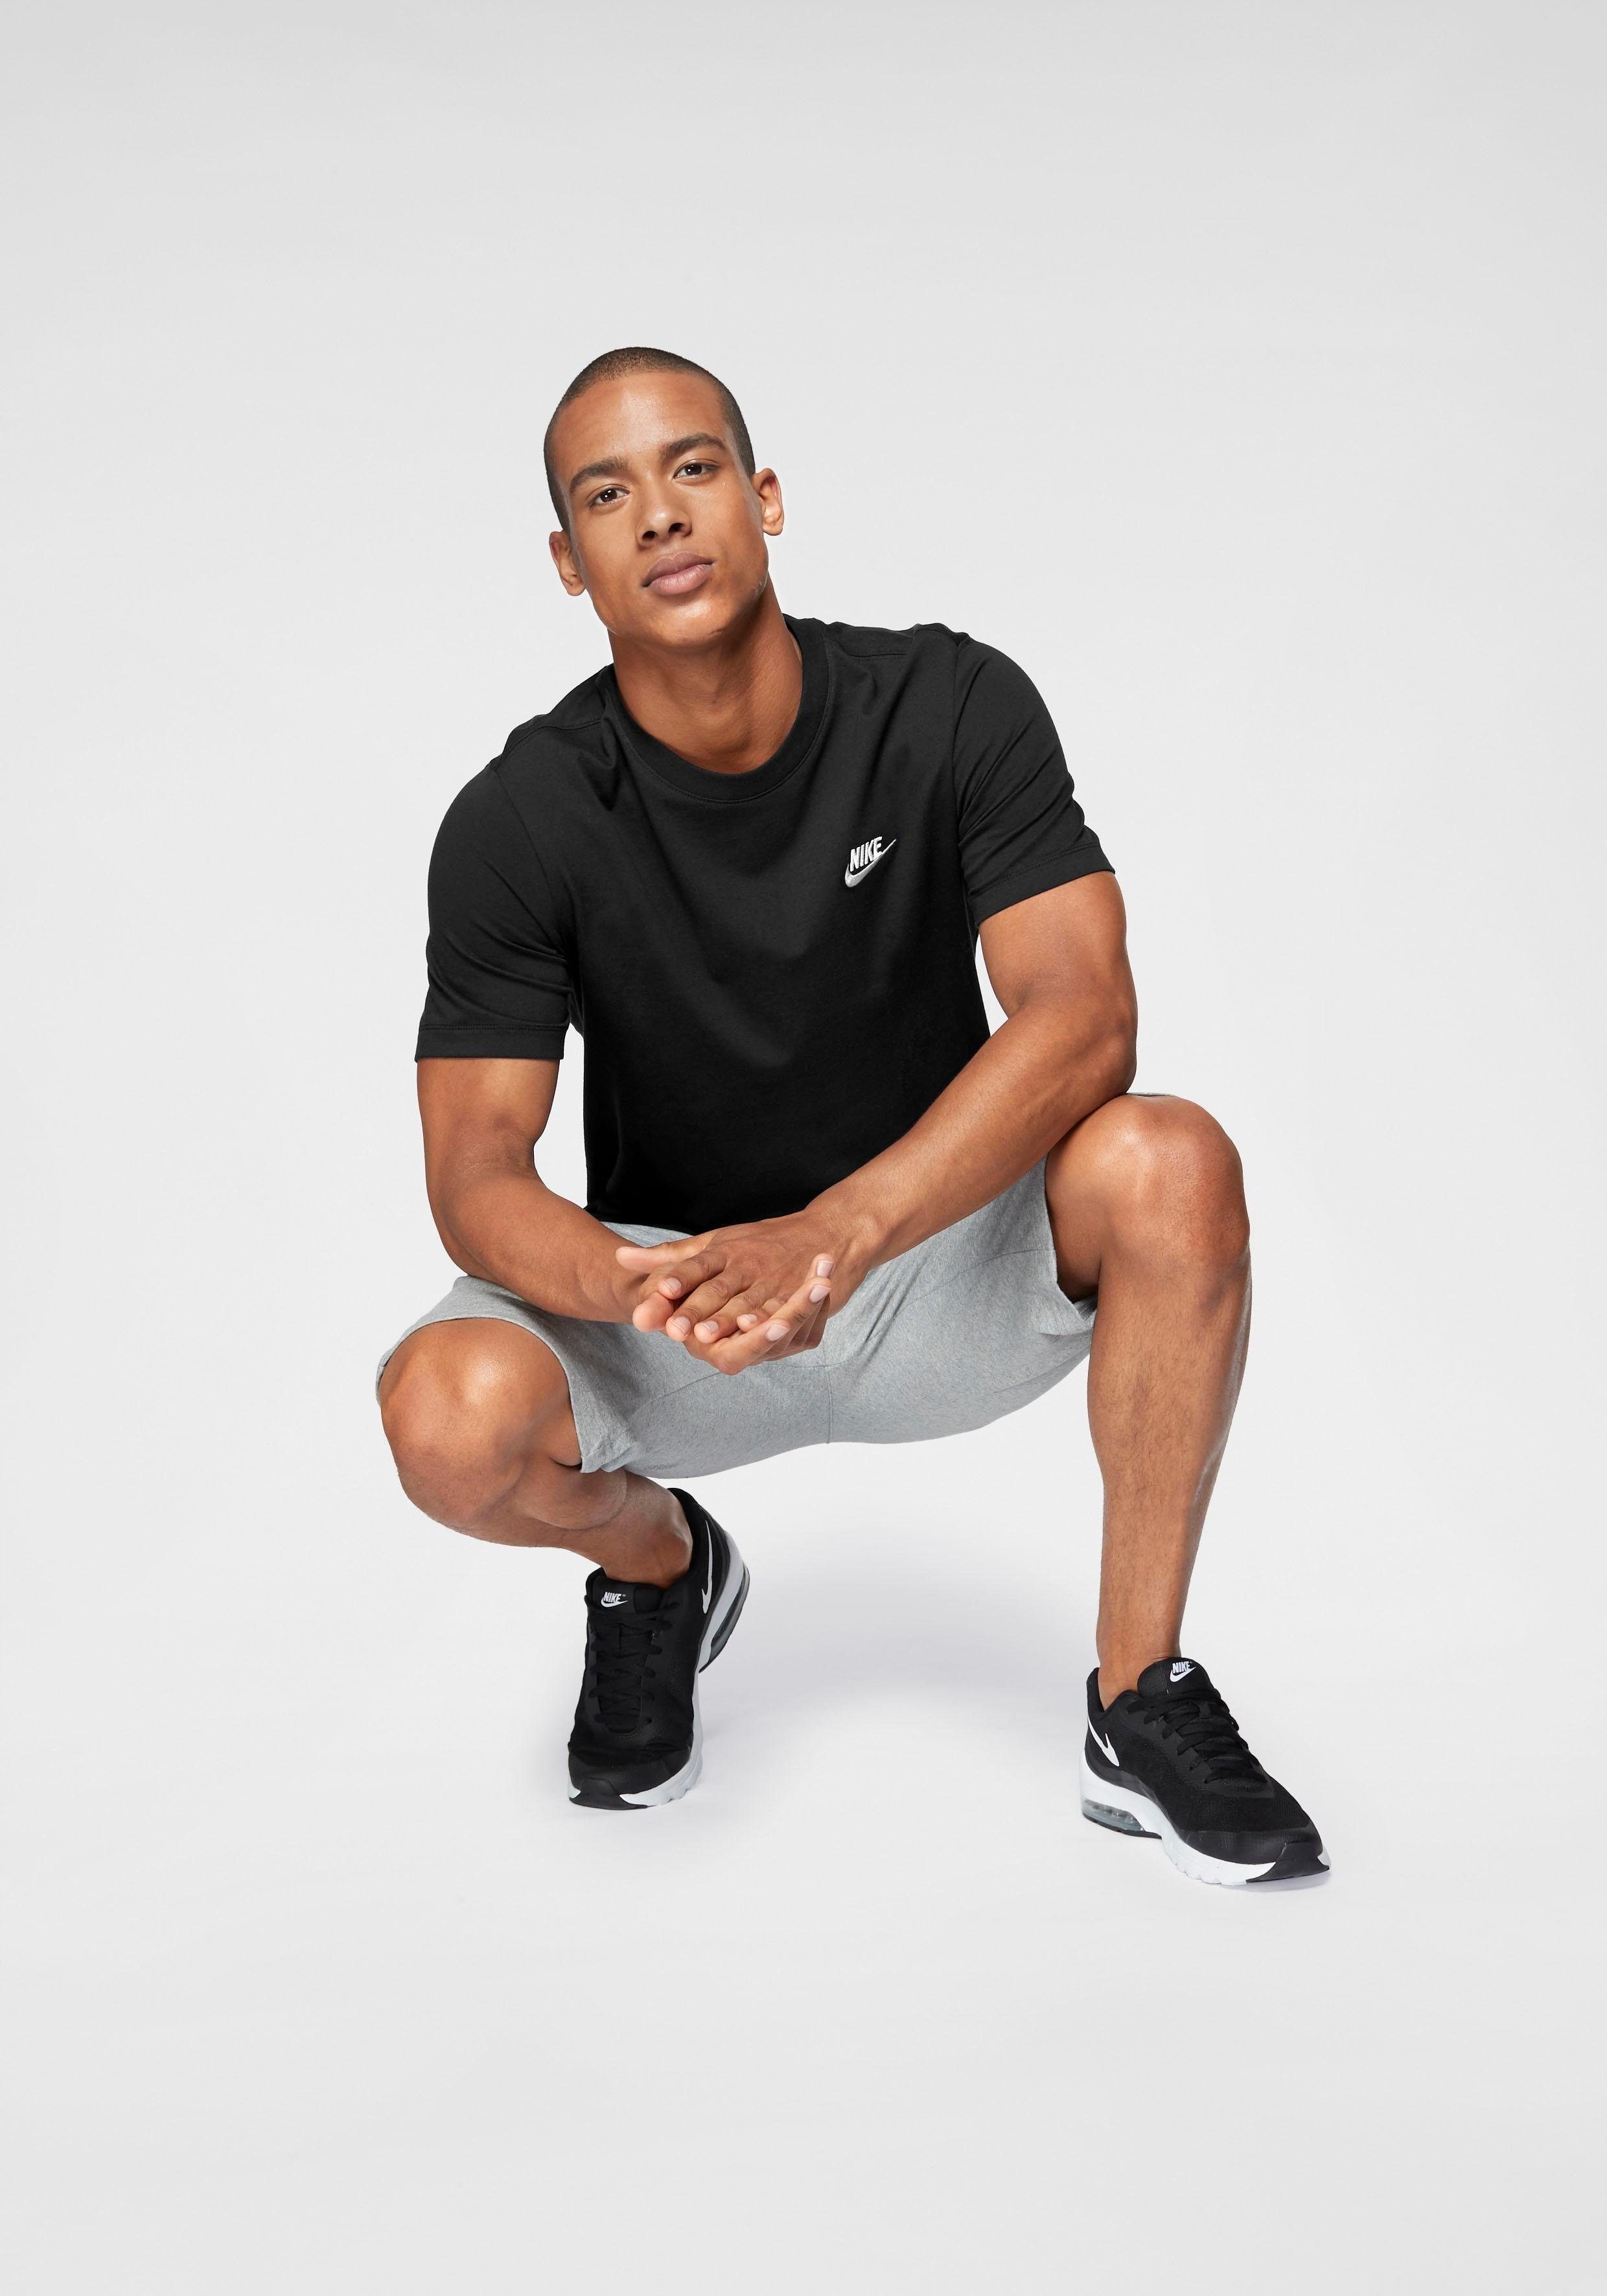 MEN'S Sportswear T-SHIRT Nike CLUB schwarz T-Shirt